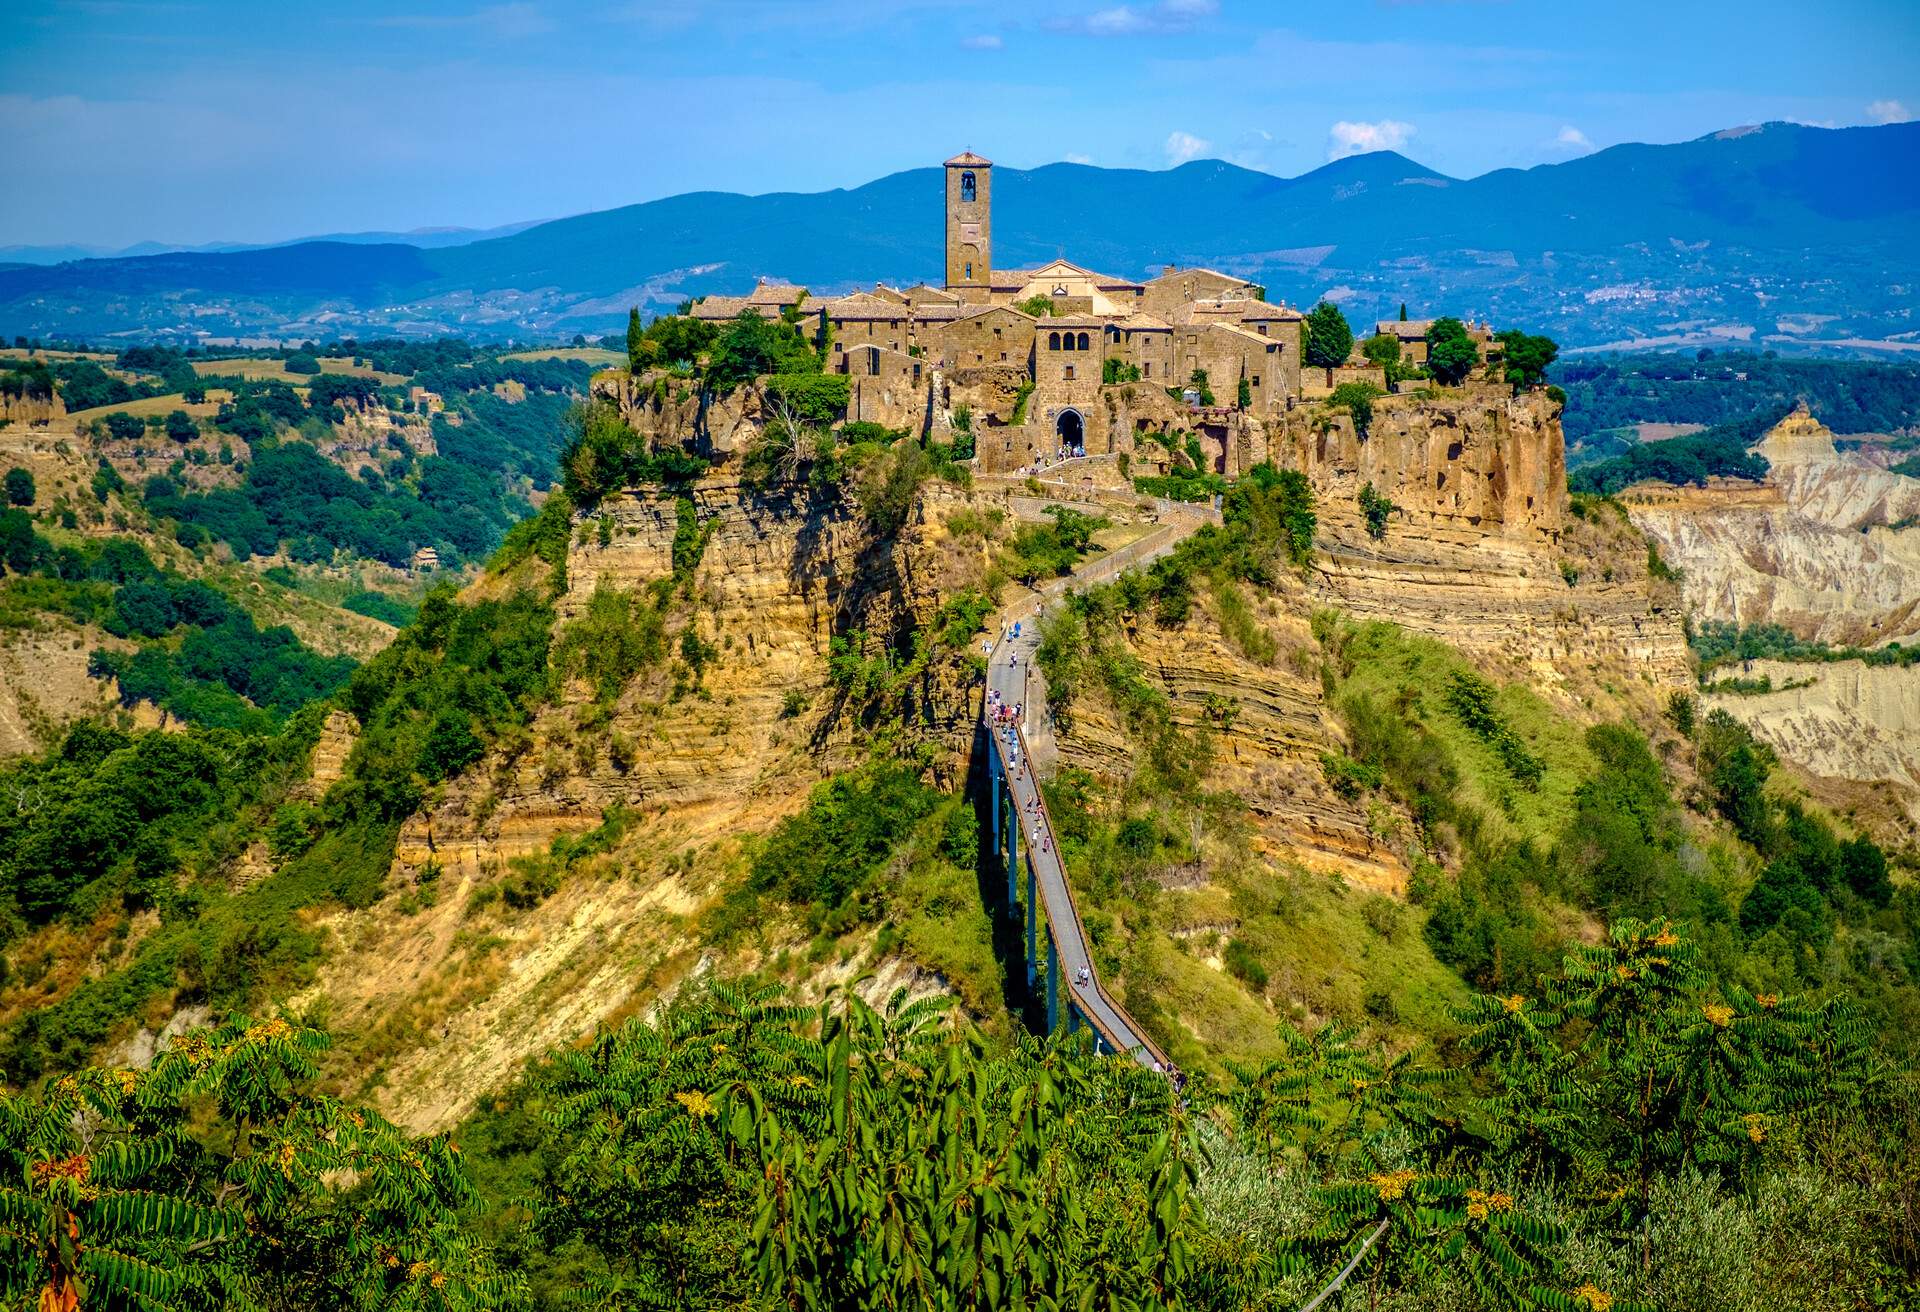 Civita di Bagnoregio - Ancient town in Italy; Shutterstock ID 484443667